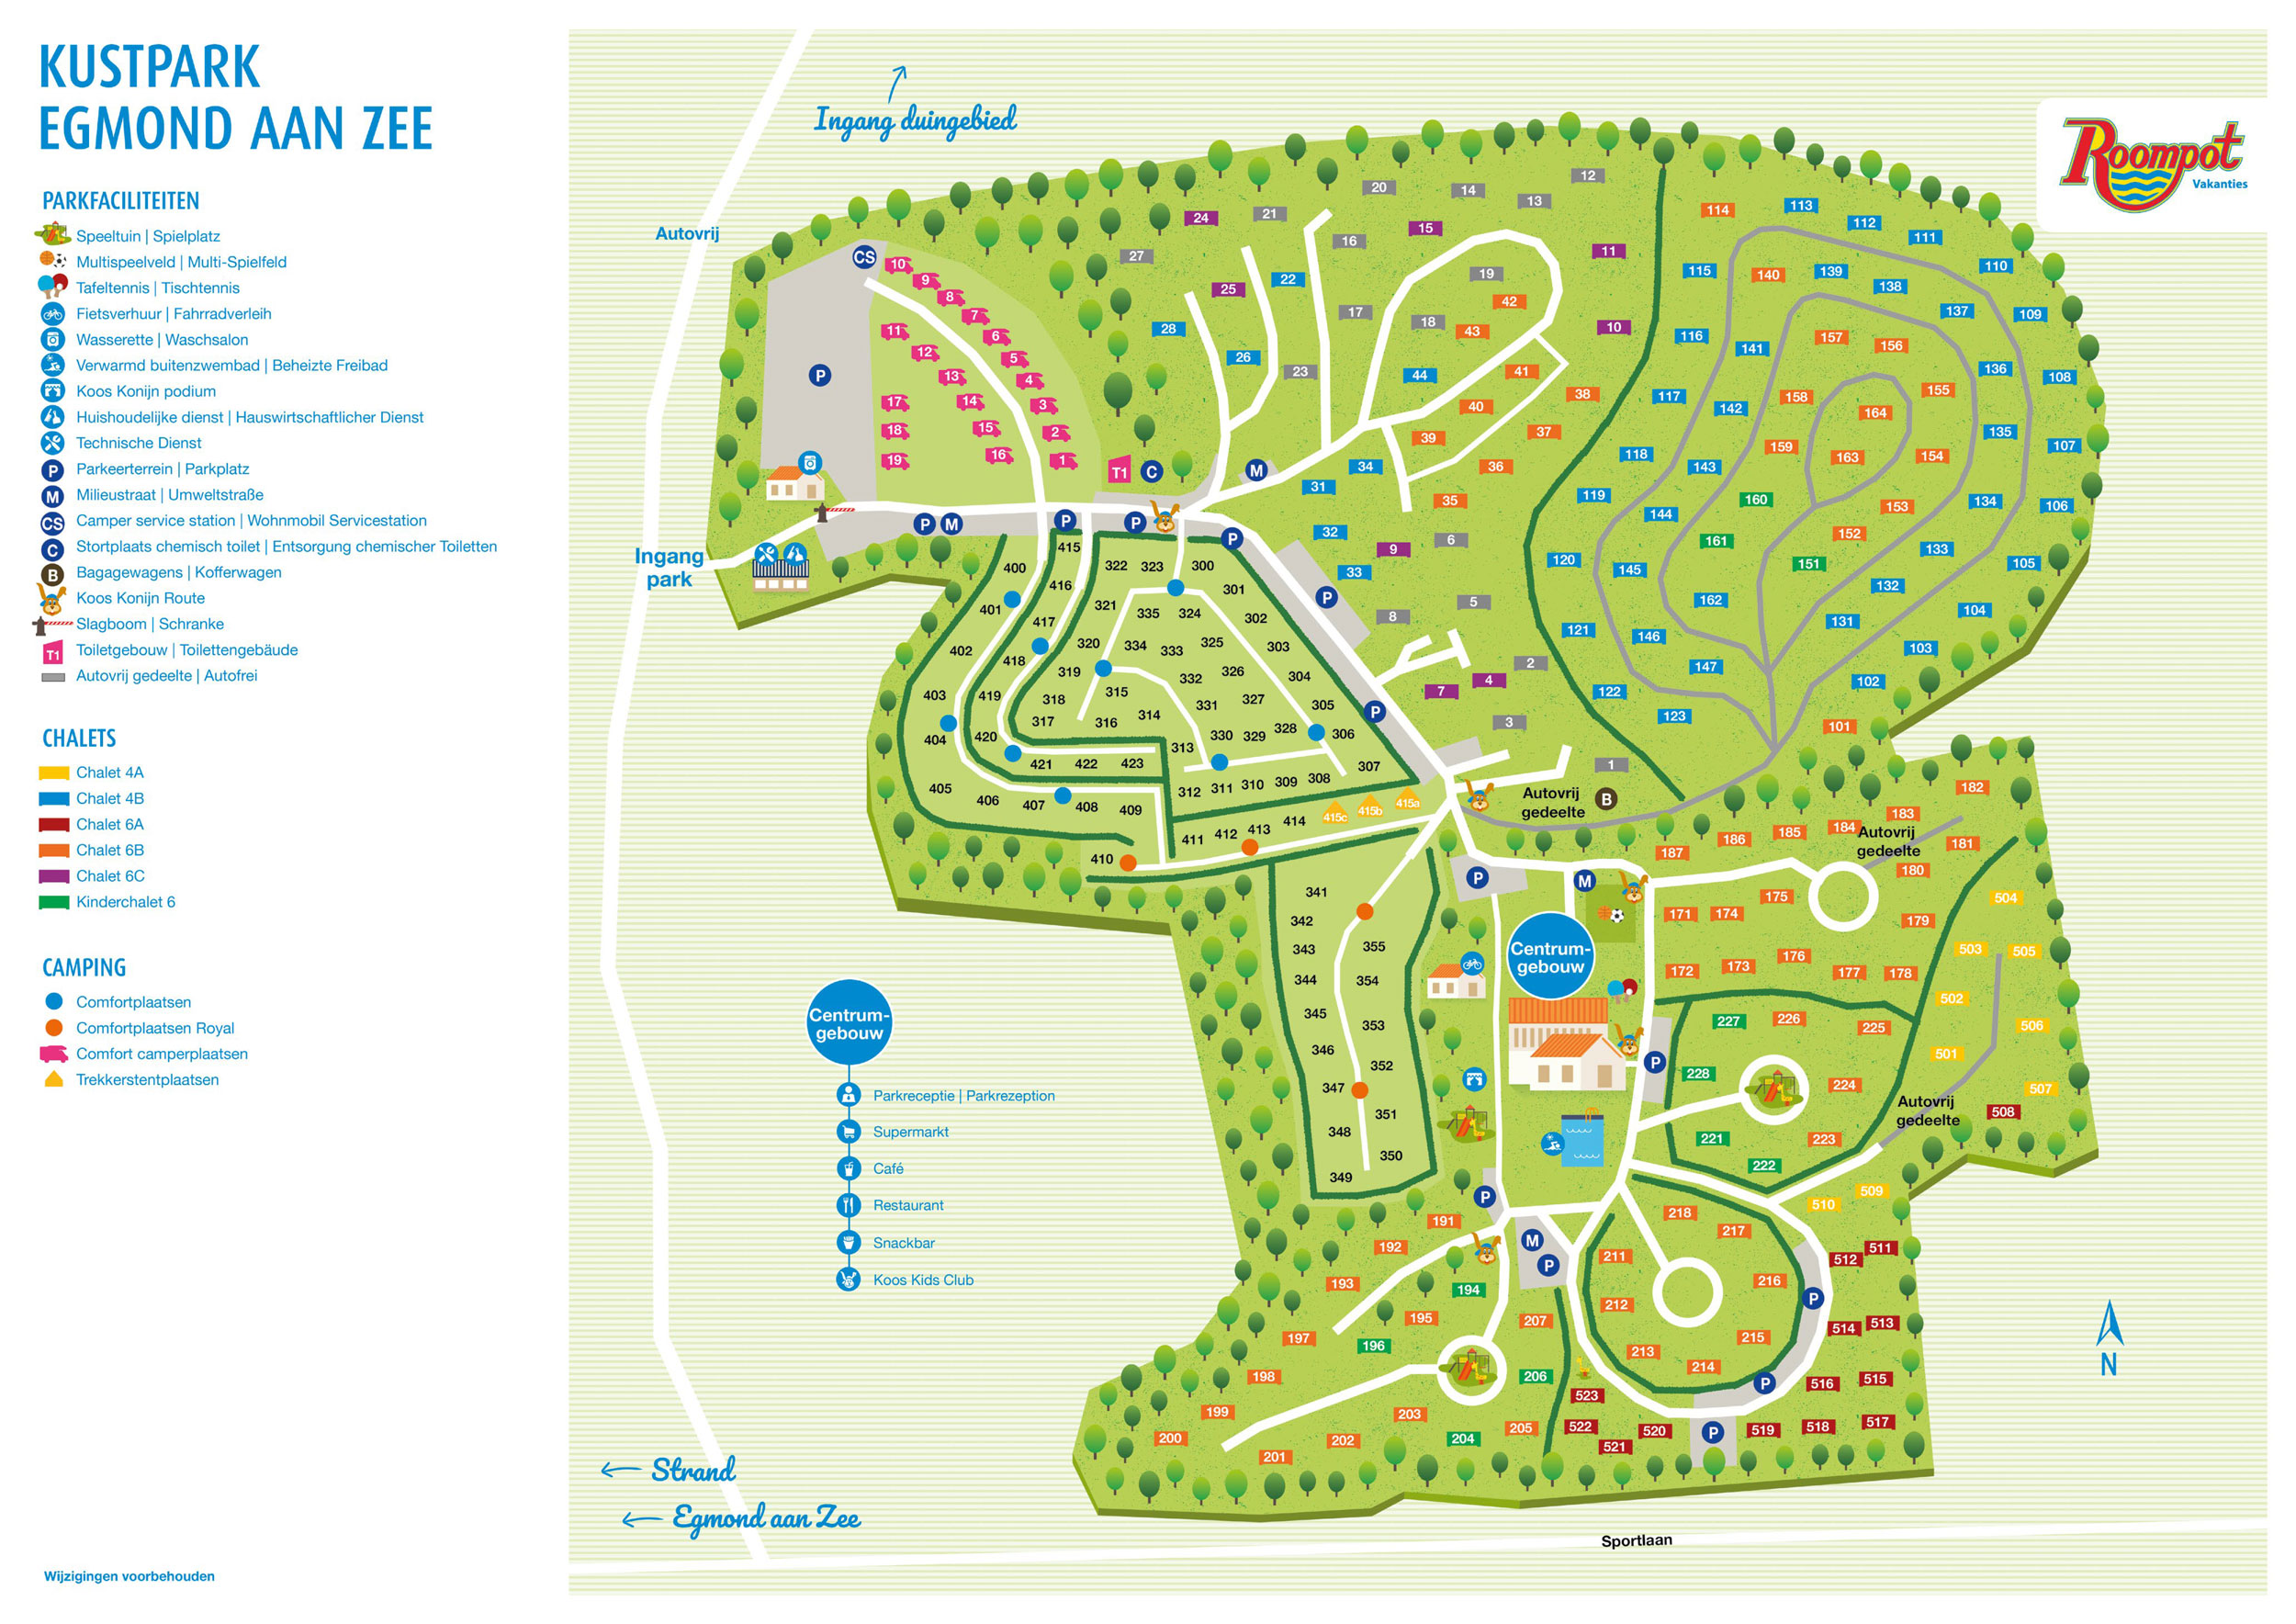 Campsite map Kustpark Egmond aan Zee